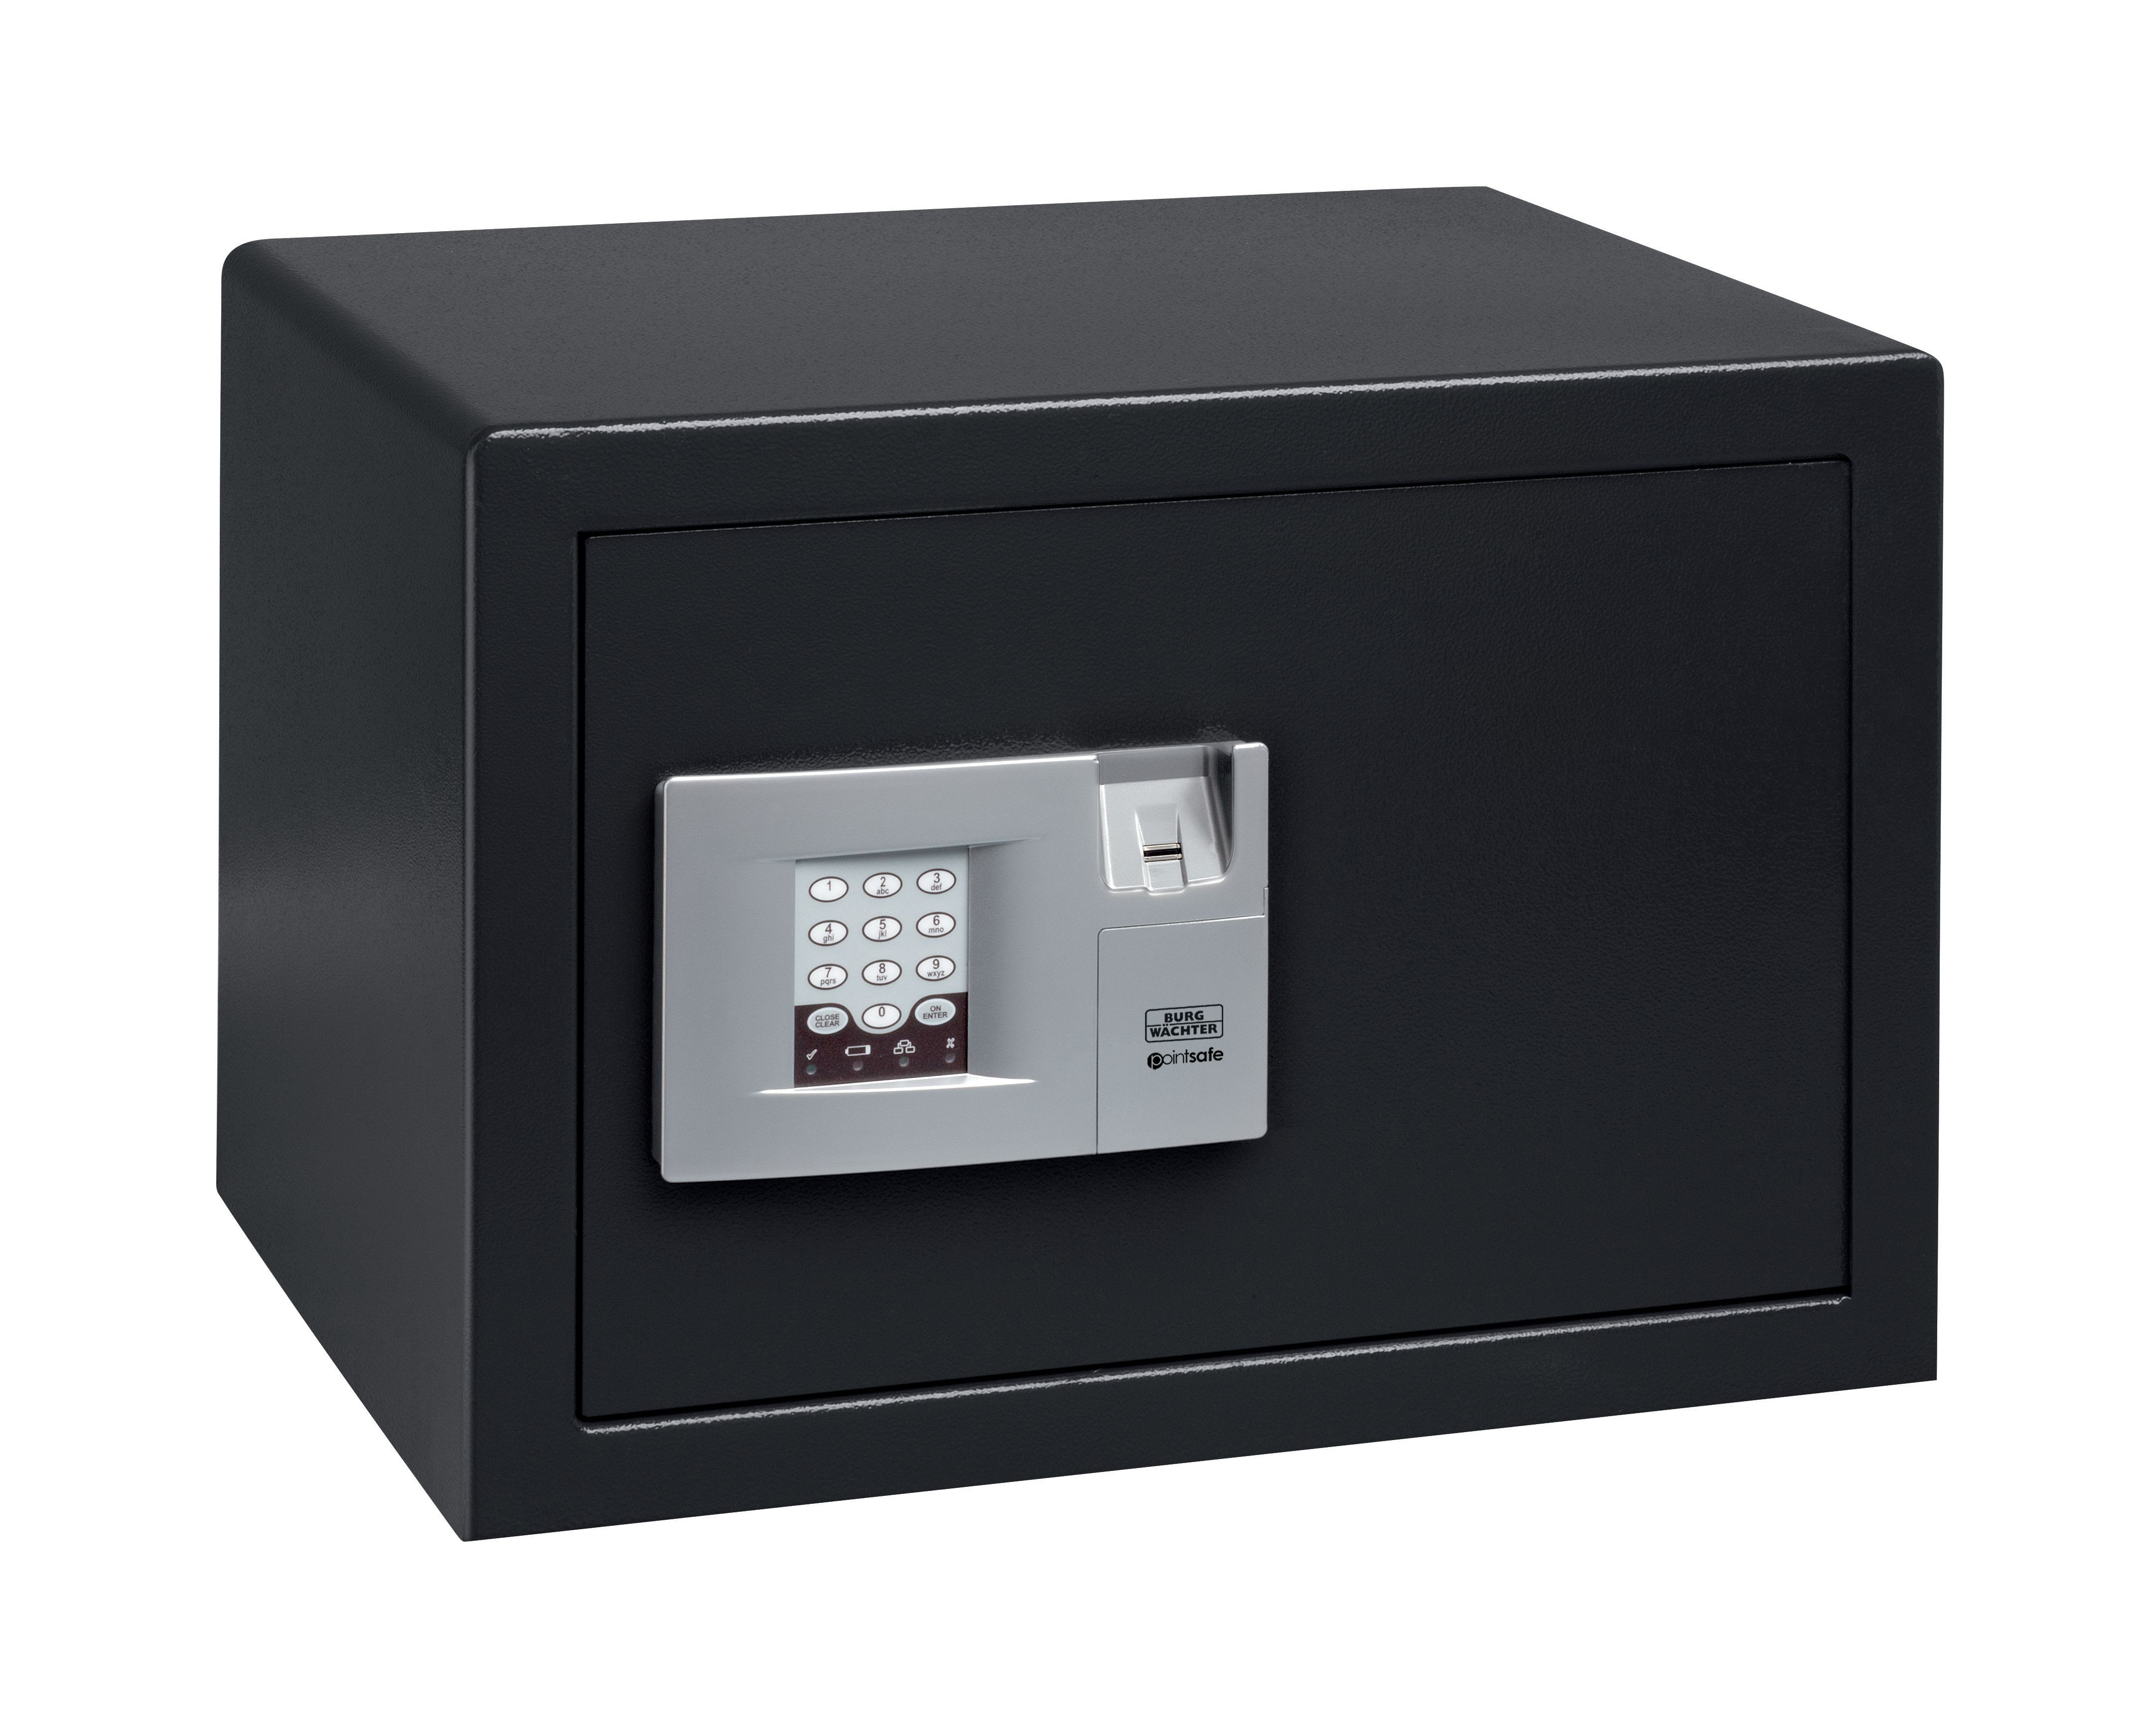 Burg-Wachter Black Pointsafe Electronic Home Safe with Fingerscan